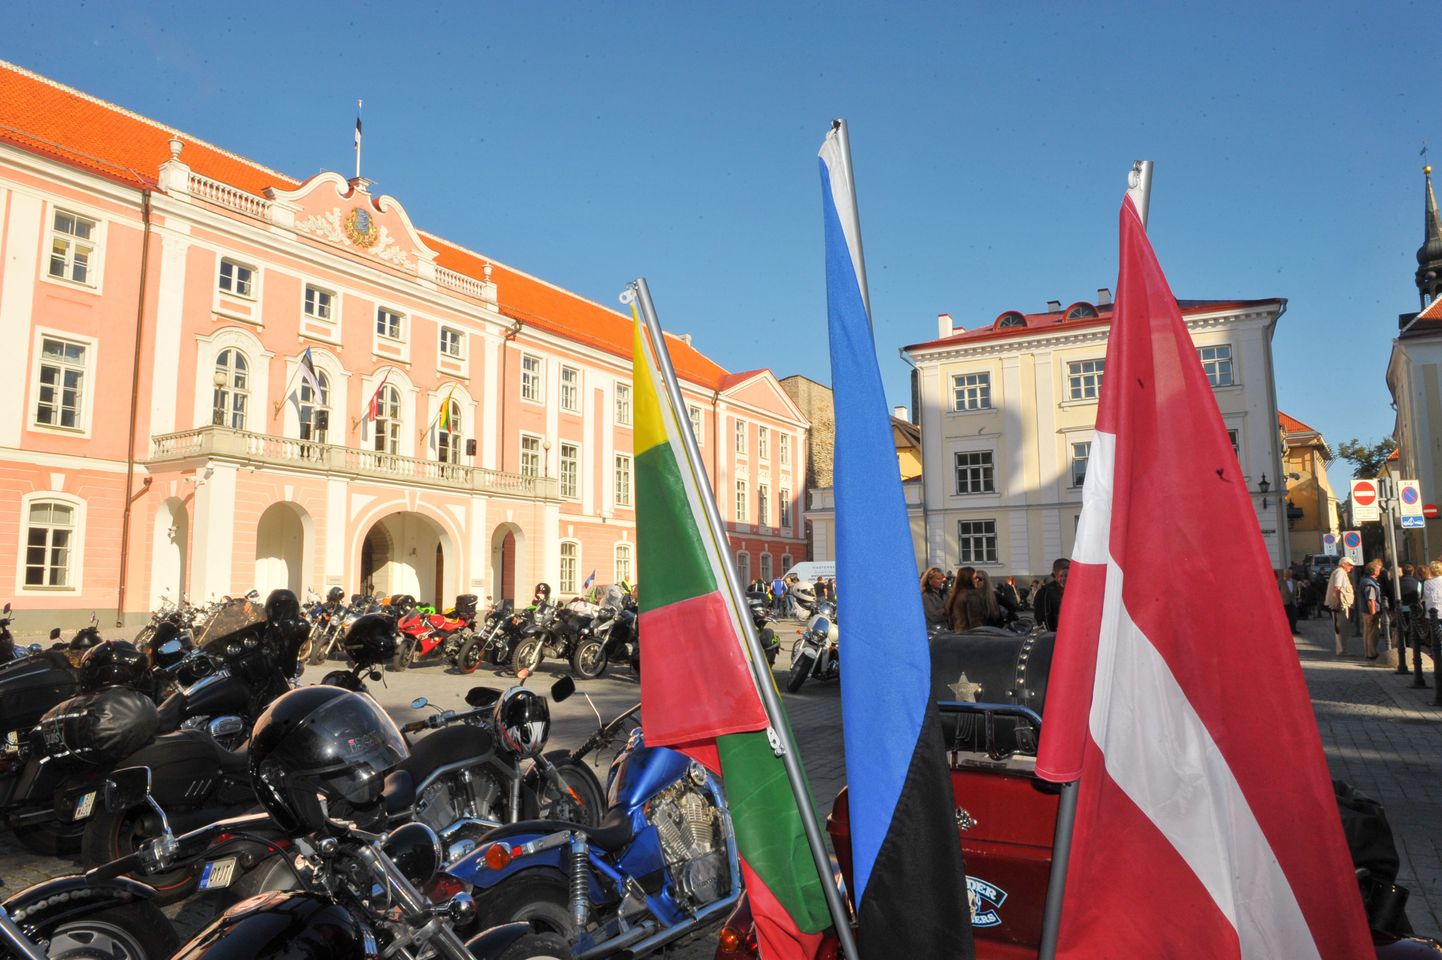 Balti keti 20 aastapäevale pühendatud üritus Komandandi aias, kus läideti vabaduse tuli ning läkitati mootorratturitega Läti poole teele Toompeal lehvinud Eesti lipp.